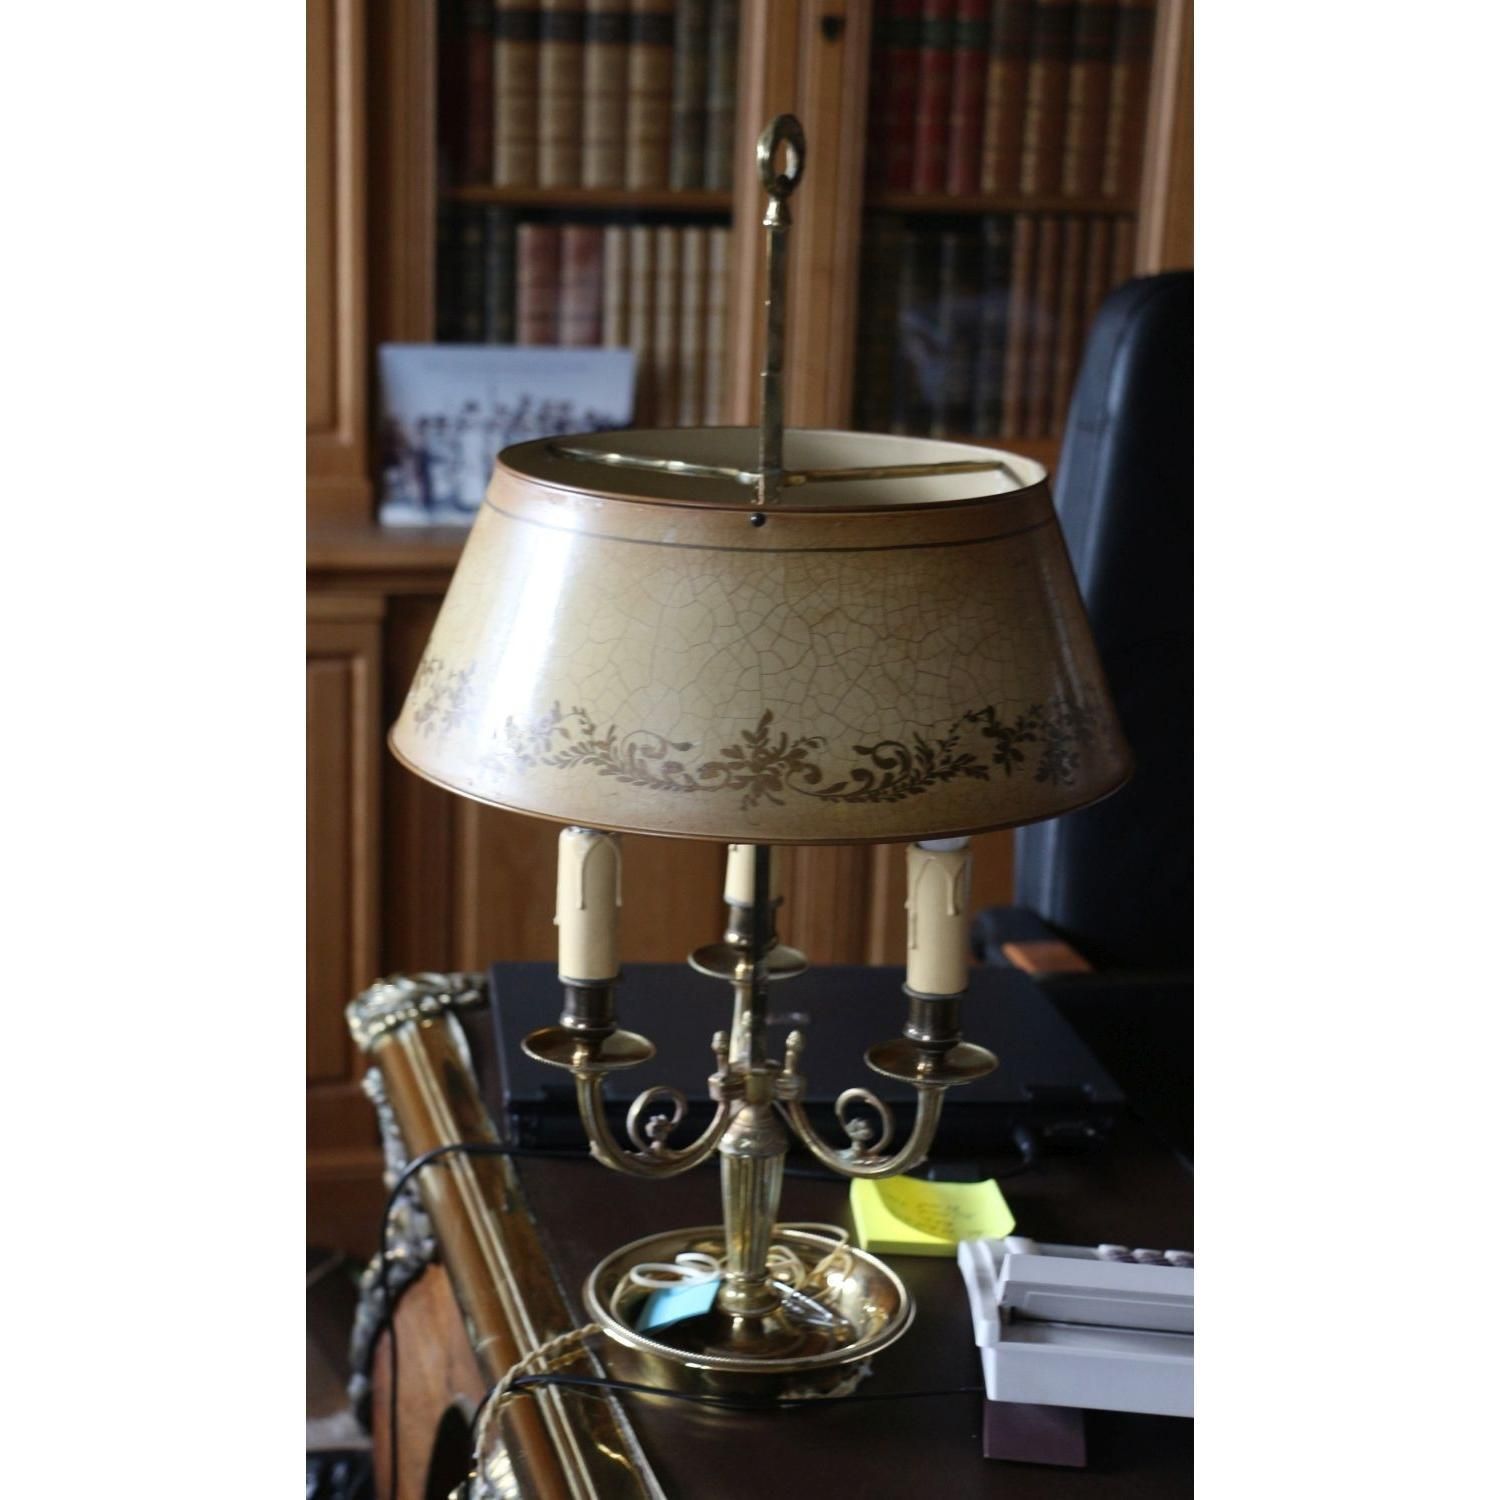 LAMPE BOUILLOTTE EN BRONZE CISELÉ ET DORÉ, STYLE LOUIS XVI 热水瓶灯，青铜凿刻和镀金。

圆形底座。
&hellip;